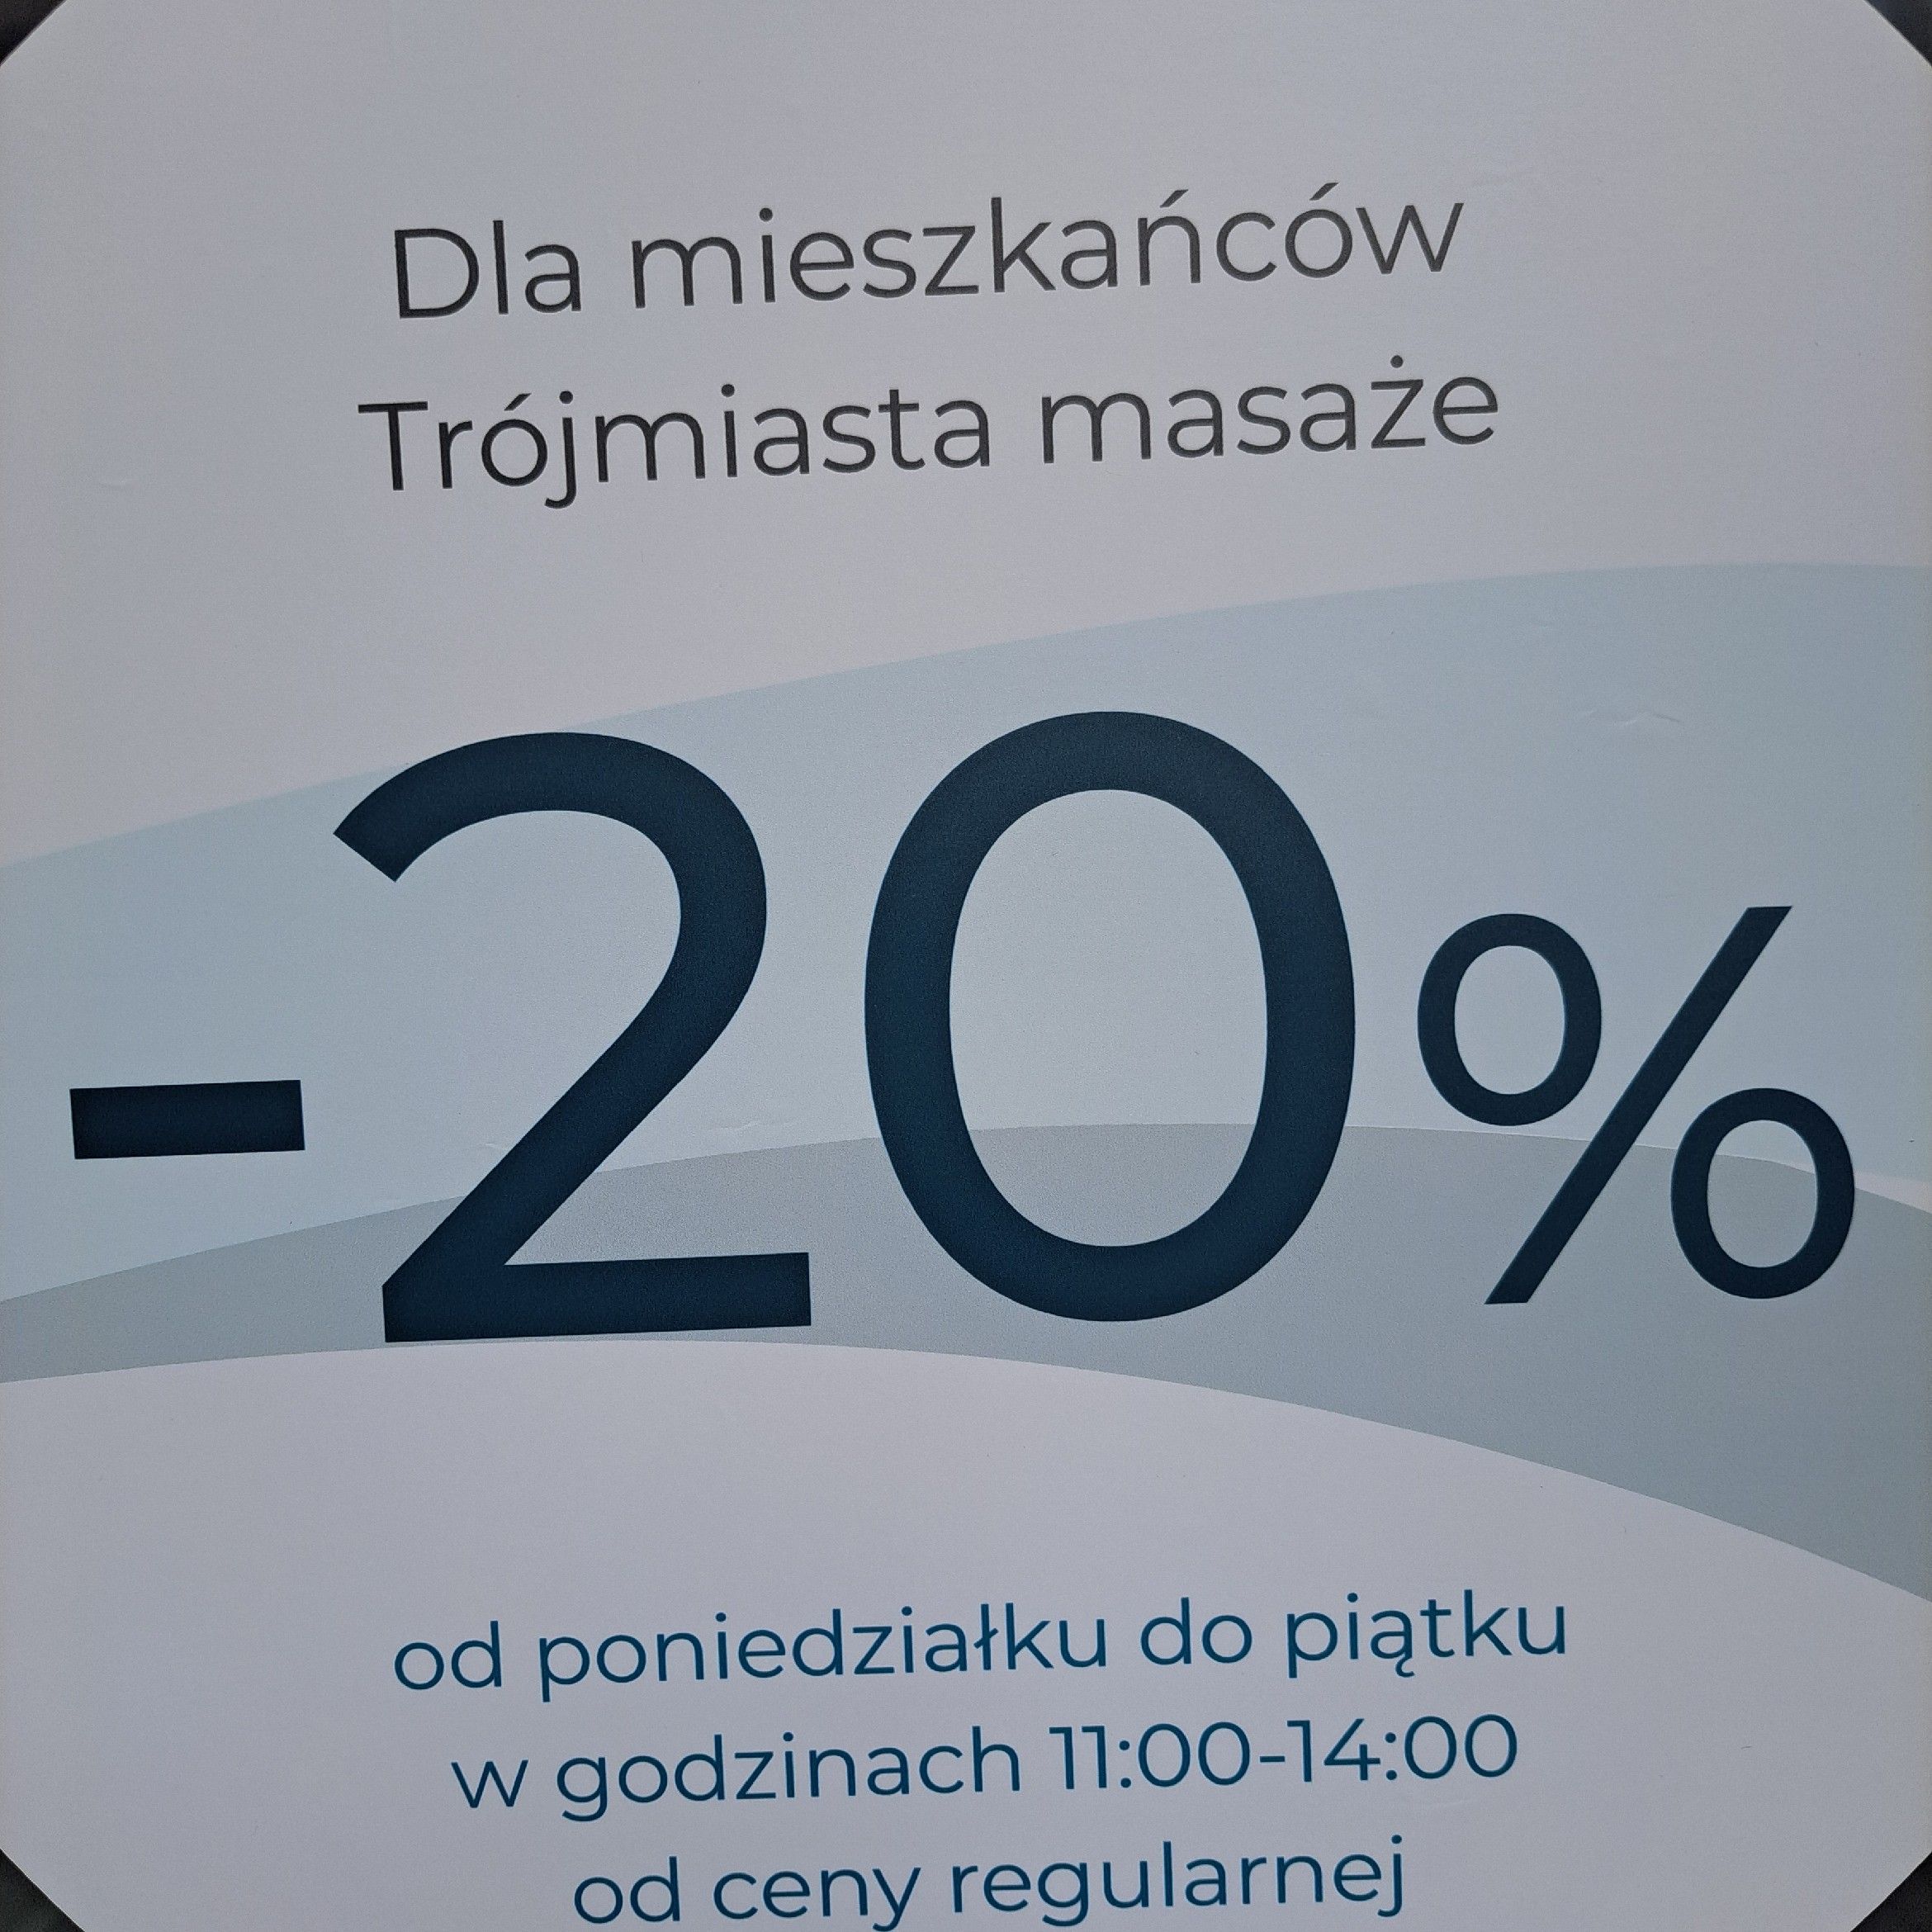 Portfolio usługi -20% MASAŻE DLA MIESZKAŃCÓW TRÓJMIASTA